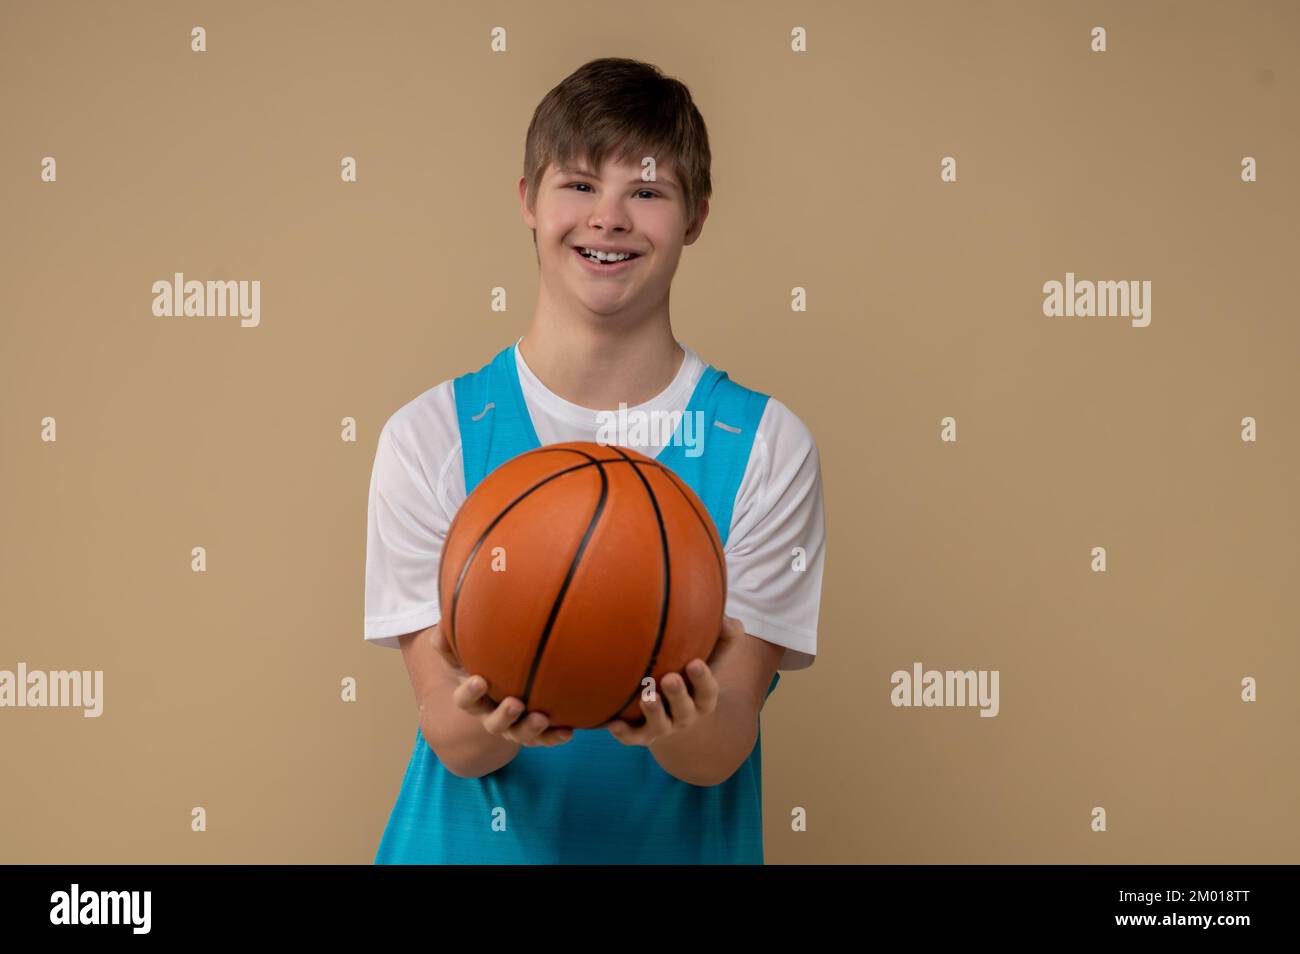 Retrato de un sonriente joven jugador de baloncesto que mostraba su equipo deportivo delante de la cámara. Foto de stock